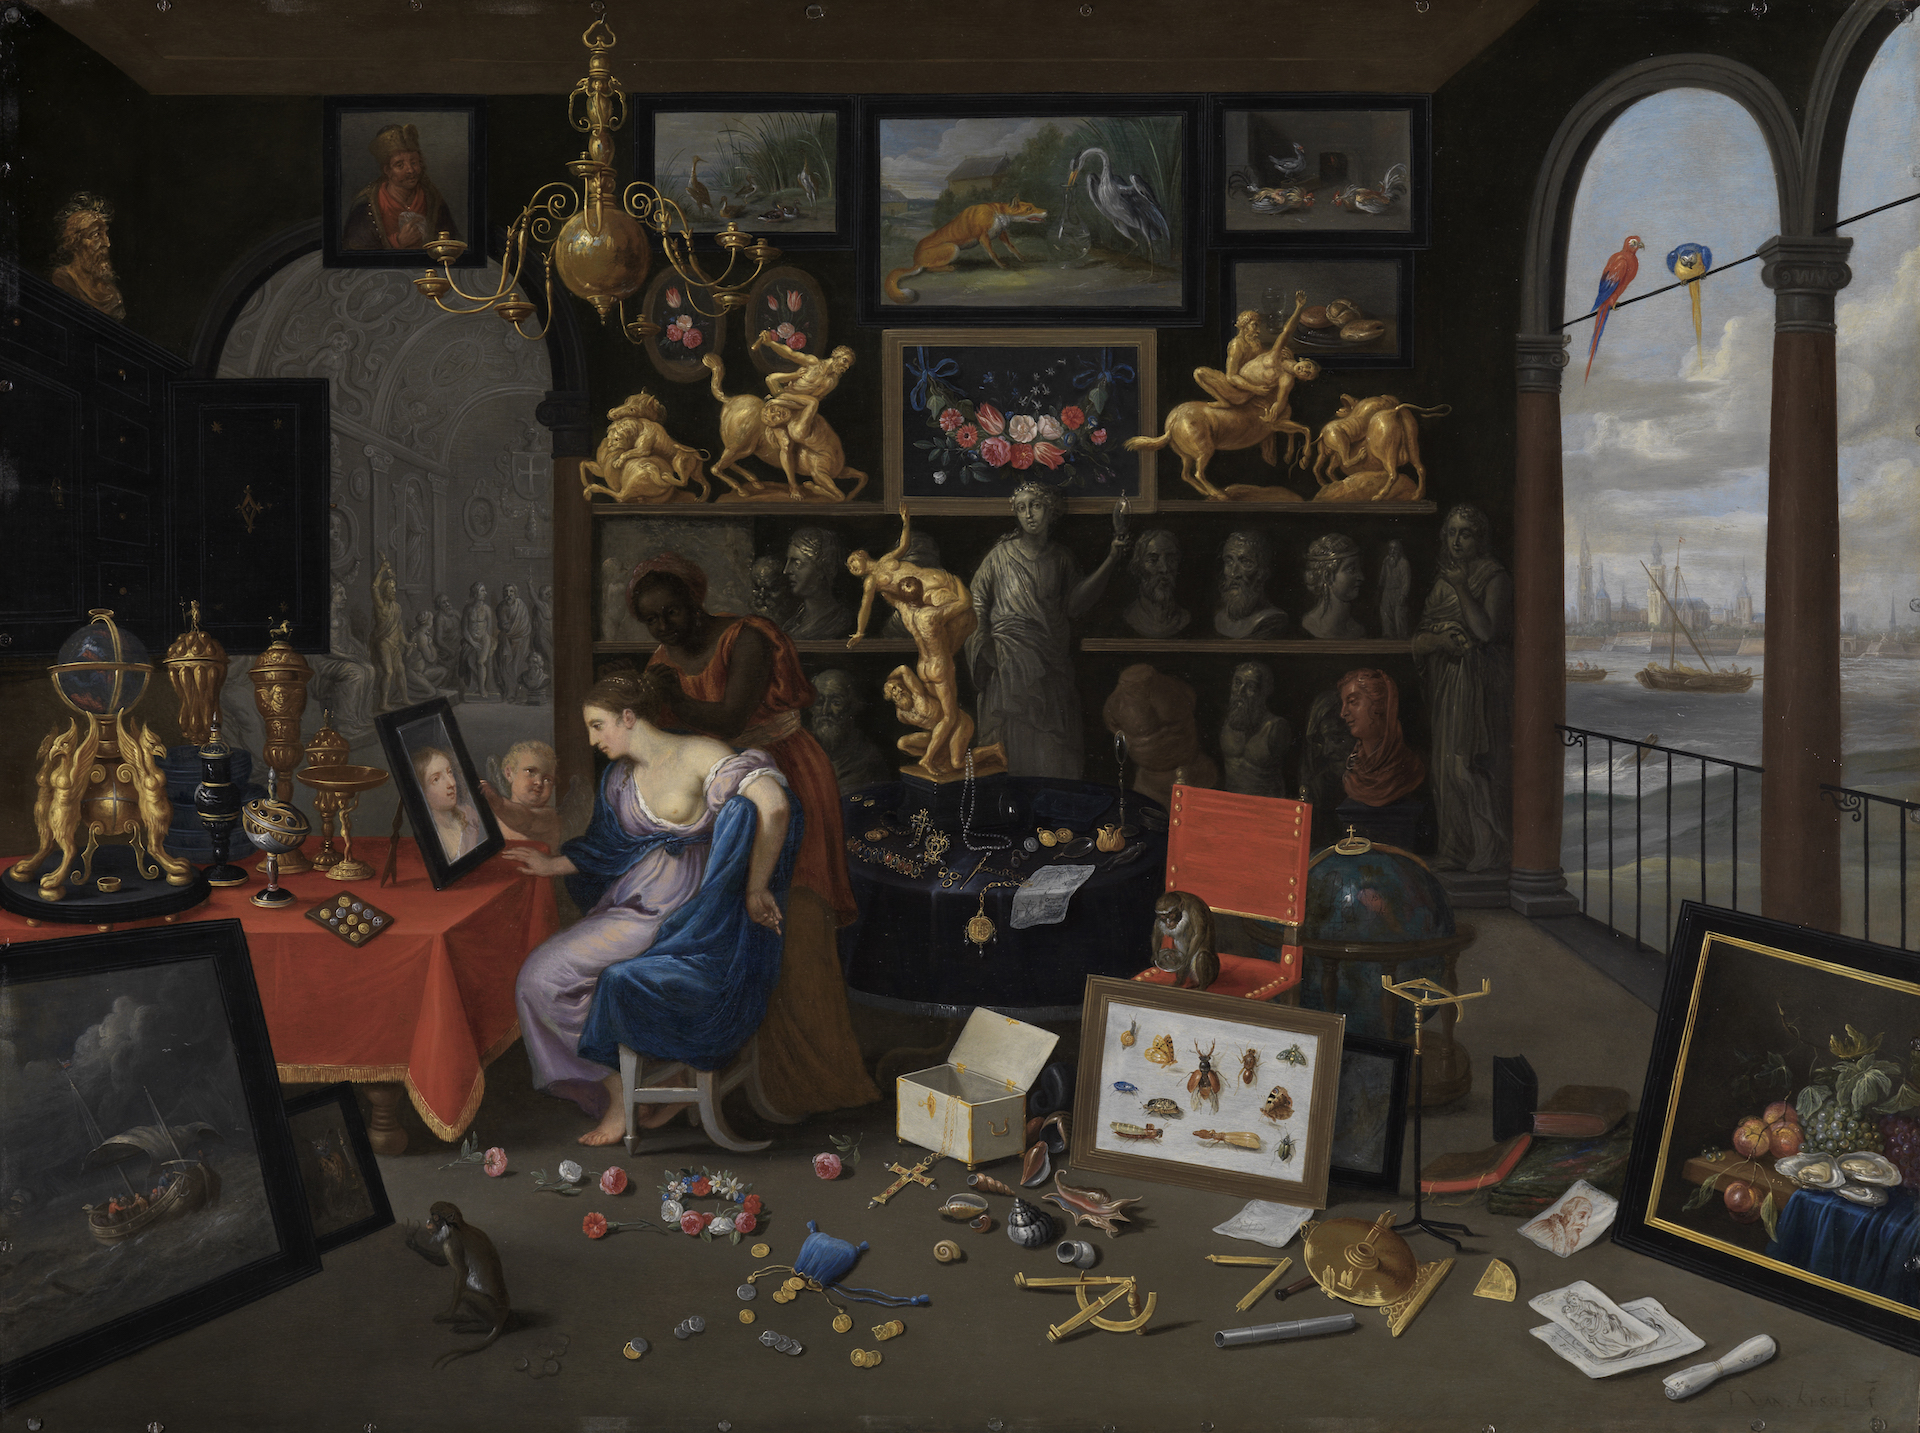 Abbildung des Gemäldes Eine Kunstkammer mit Venus bei der Toilette. Es zeigt einen mit verschiedenen wertvollen Gegenständen zu gestellten Raum. In der Mitte wird eine Frau von einer anderen Frau frisiert.